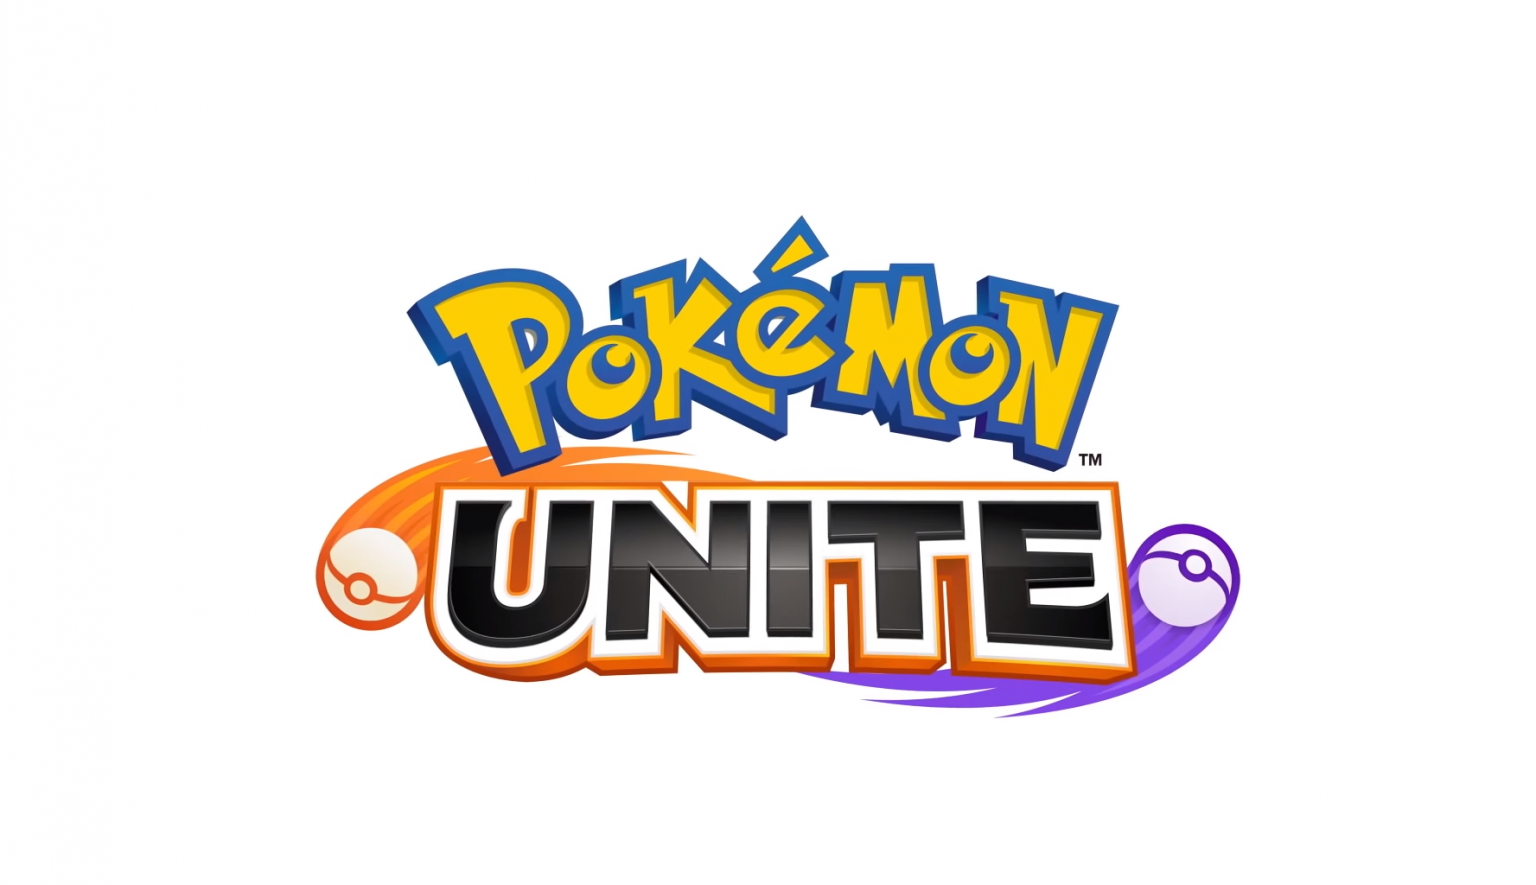 Unite download the new